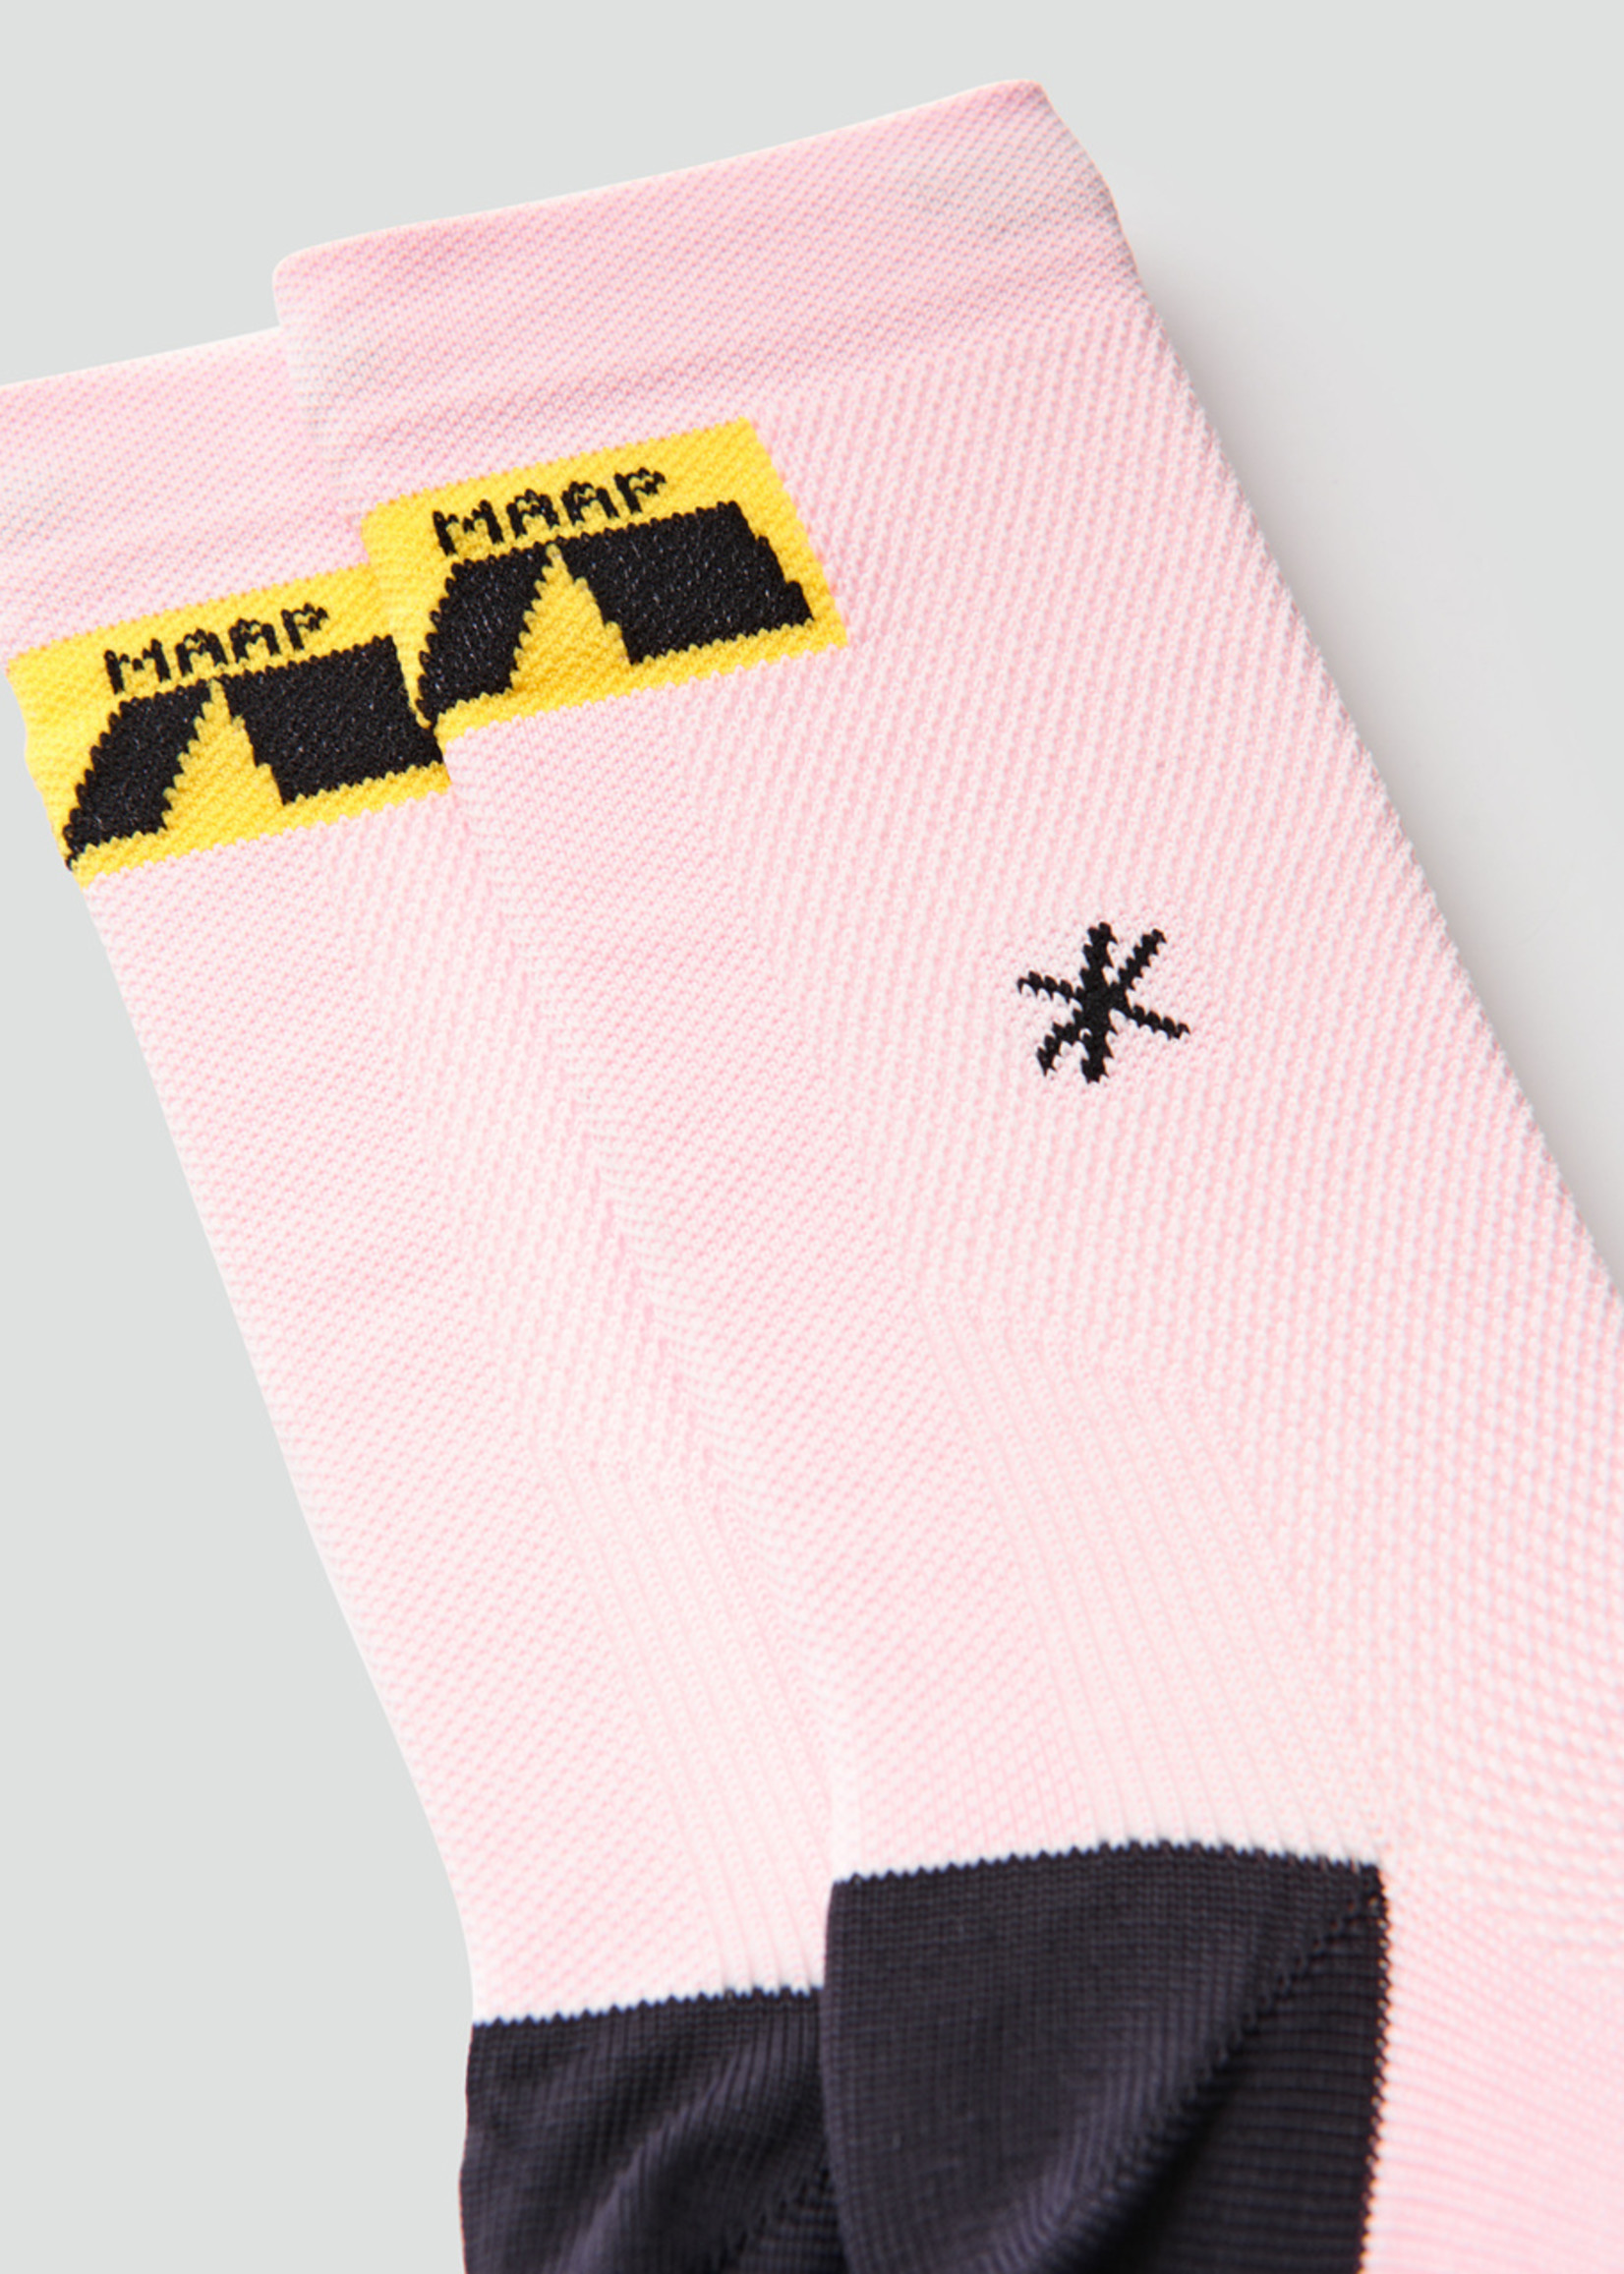 Maap Axis Socks - Pale Pink